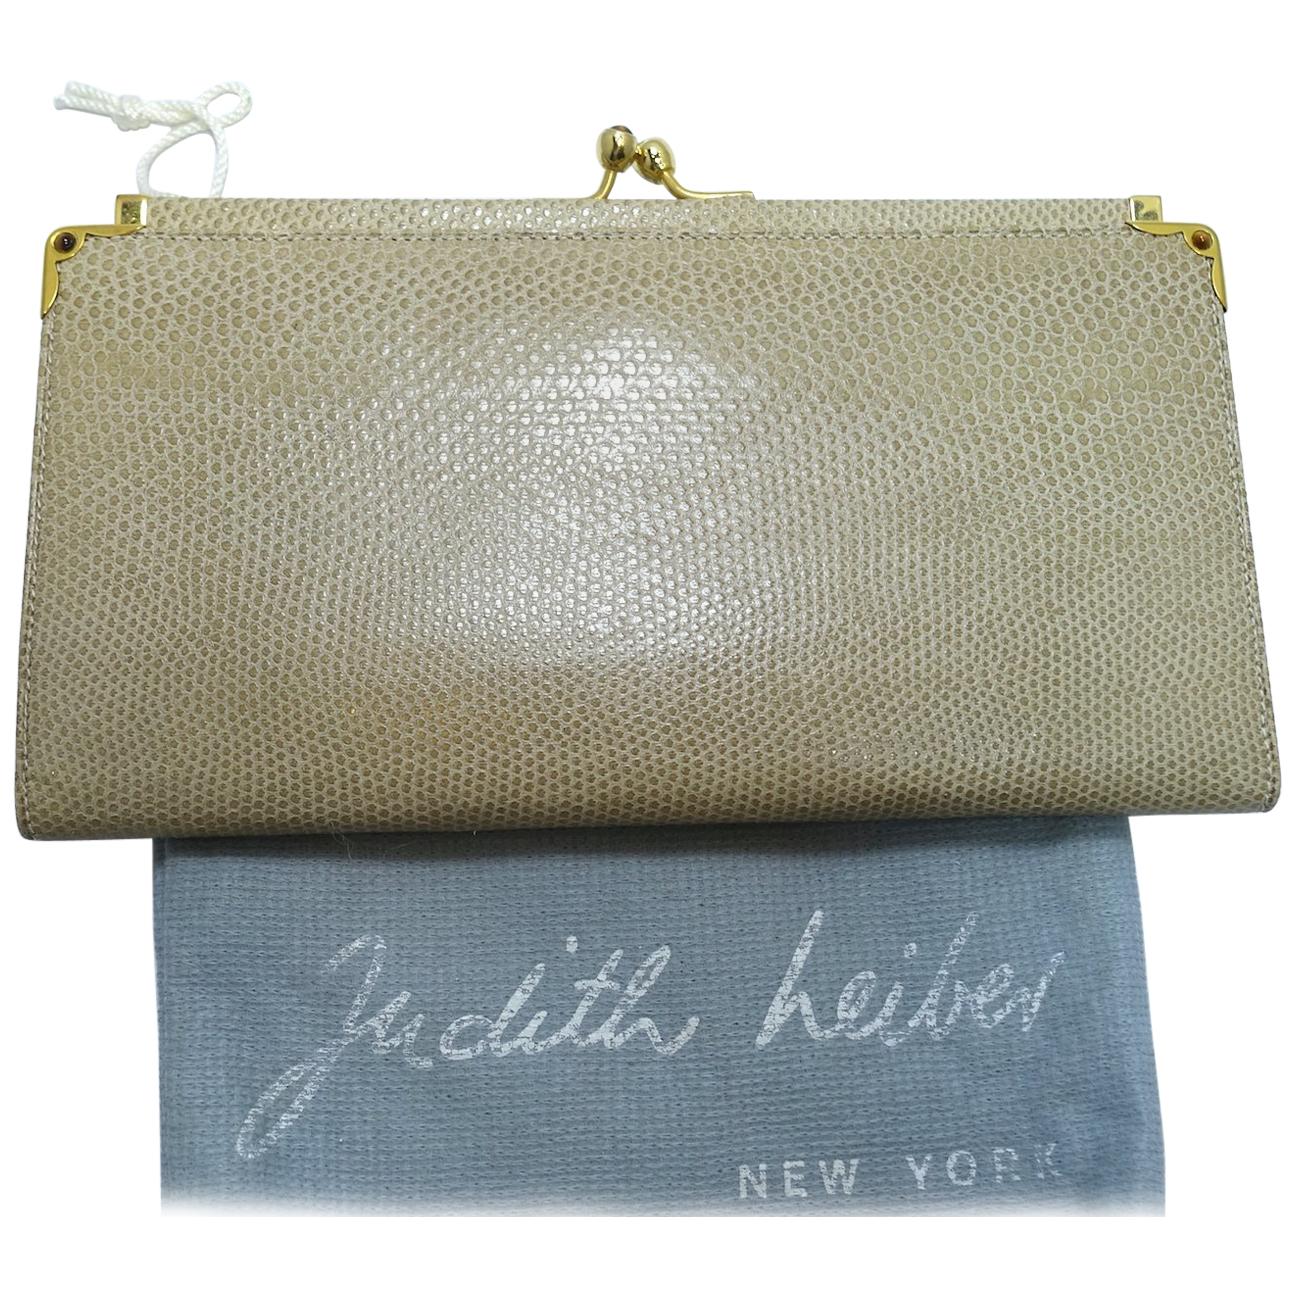 Judith Leiber Vintage Change Purse Wallet For Sale